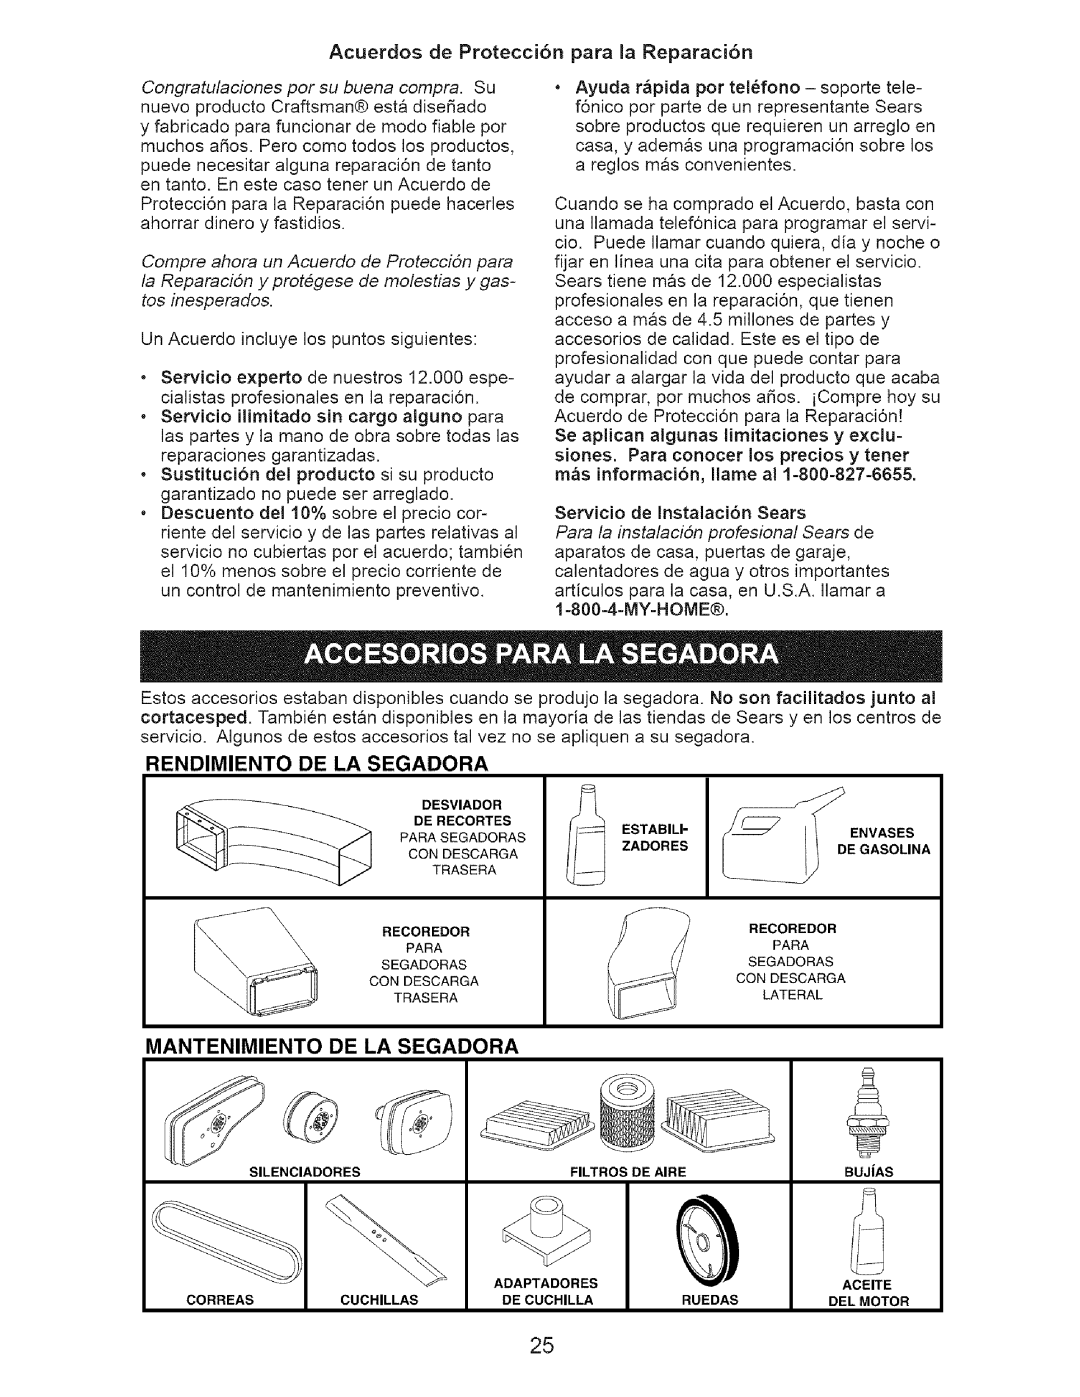 Craftsman 917.37712 manual Mantenimiento De La Segadora, Rendimiento De La Segadora 